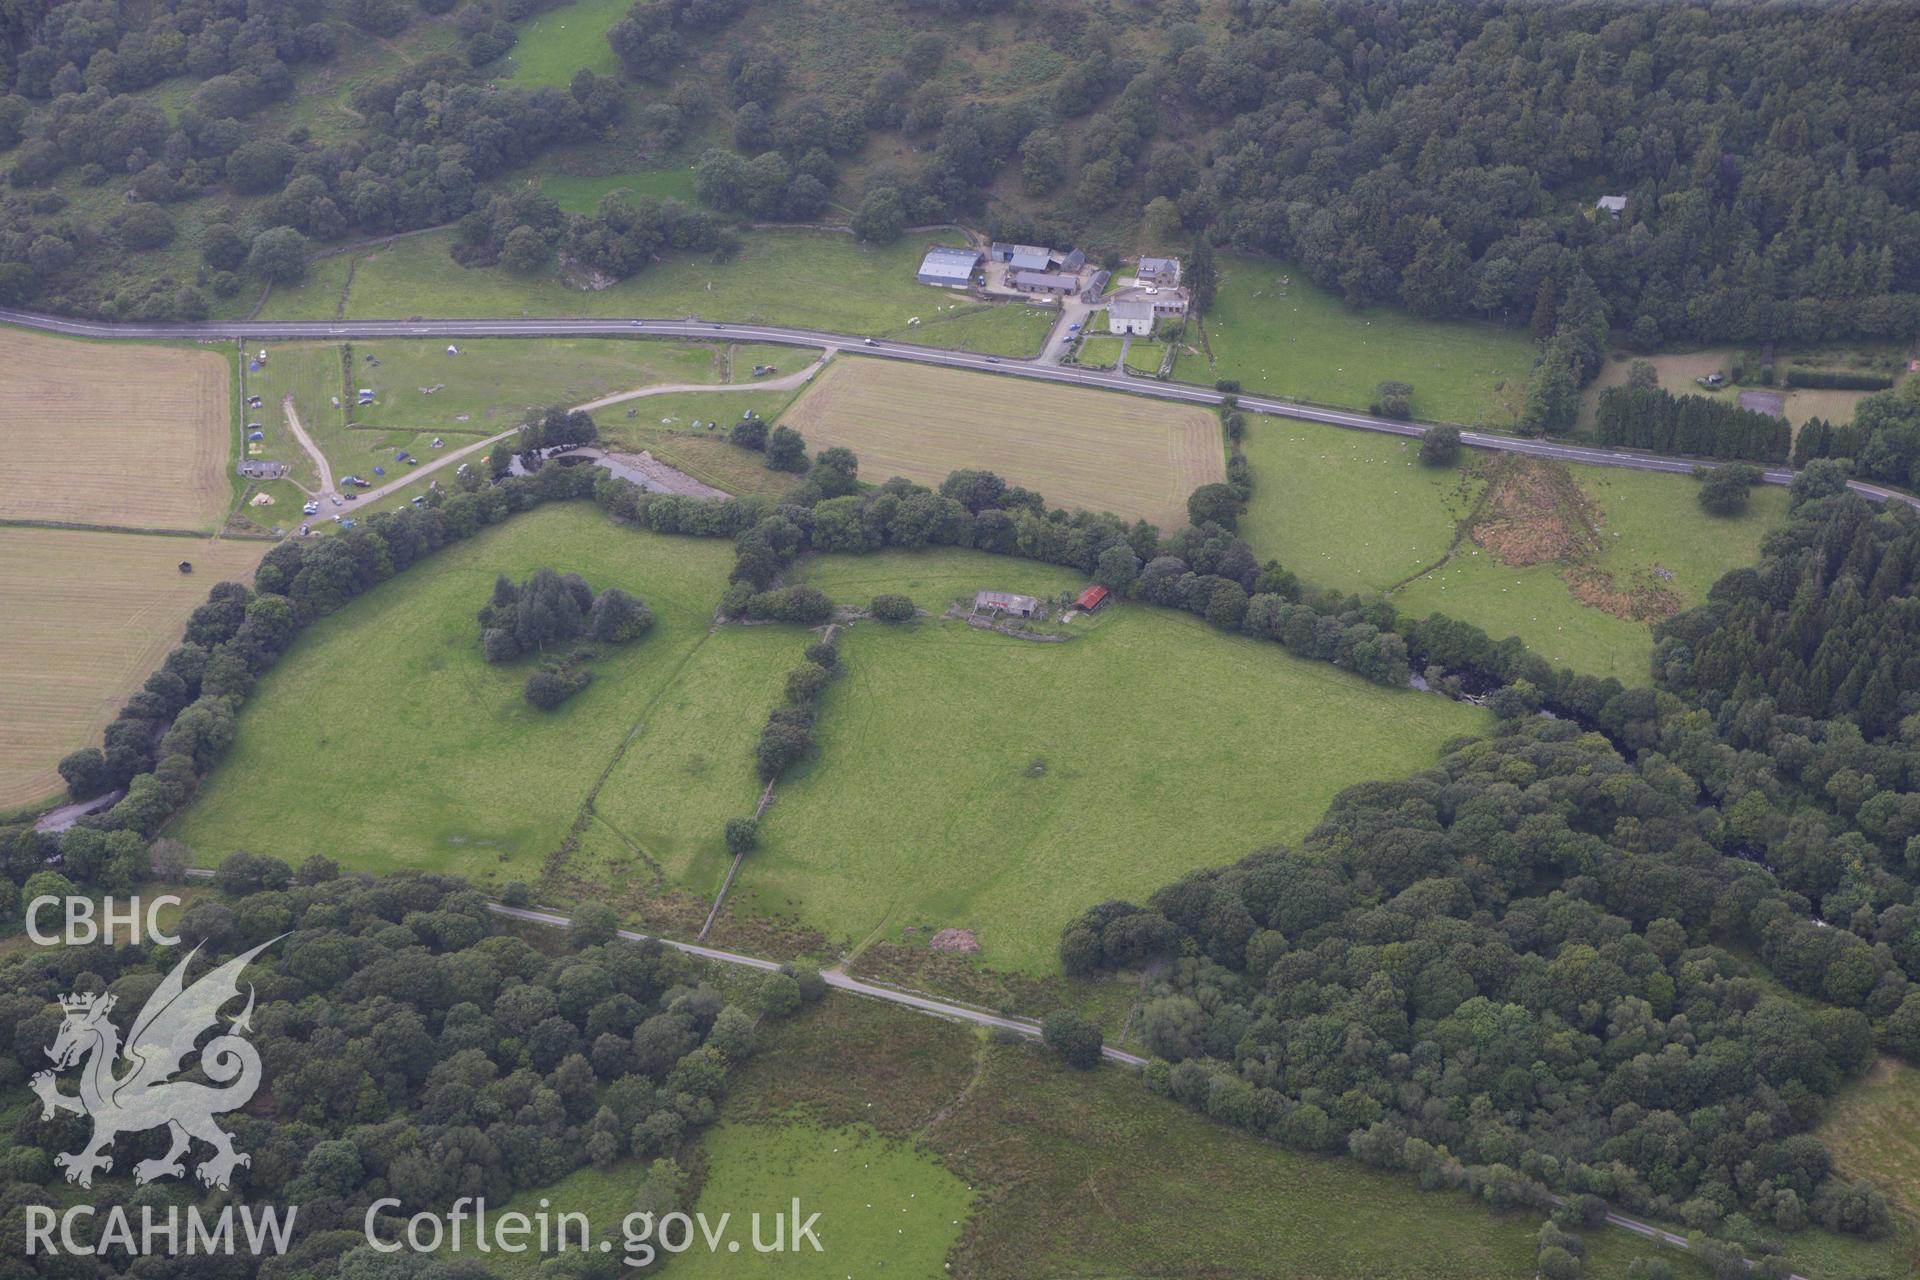 RCAHMW colour oblique aerial photograph of Caer Llugwy (Bryn-y-Gefeiliau) Roman Site. Taken on 06 August 2009 by Toby Driver